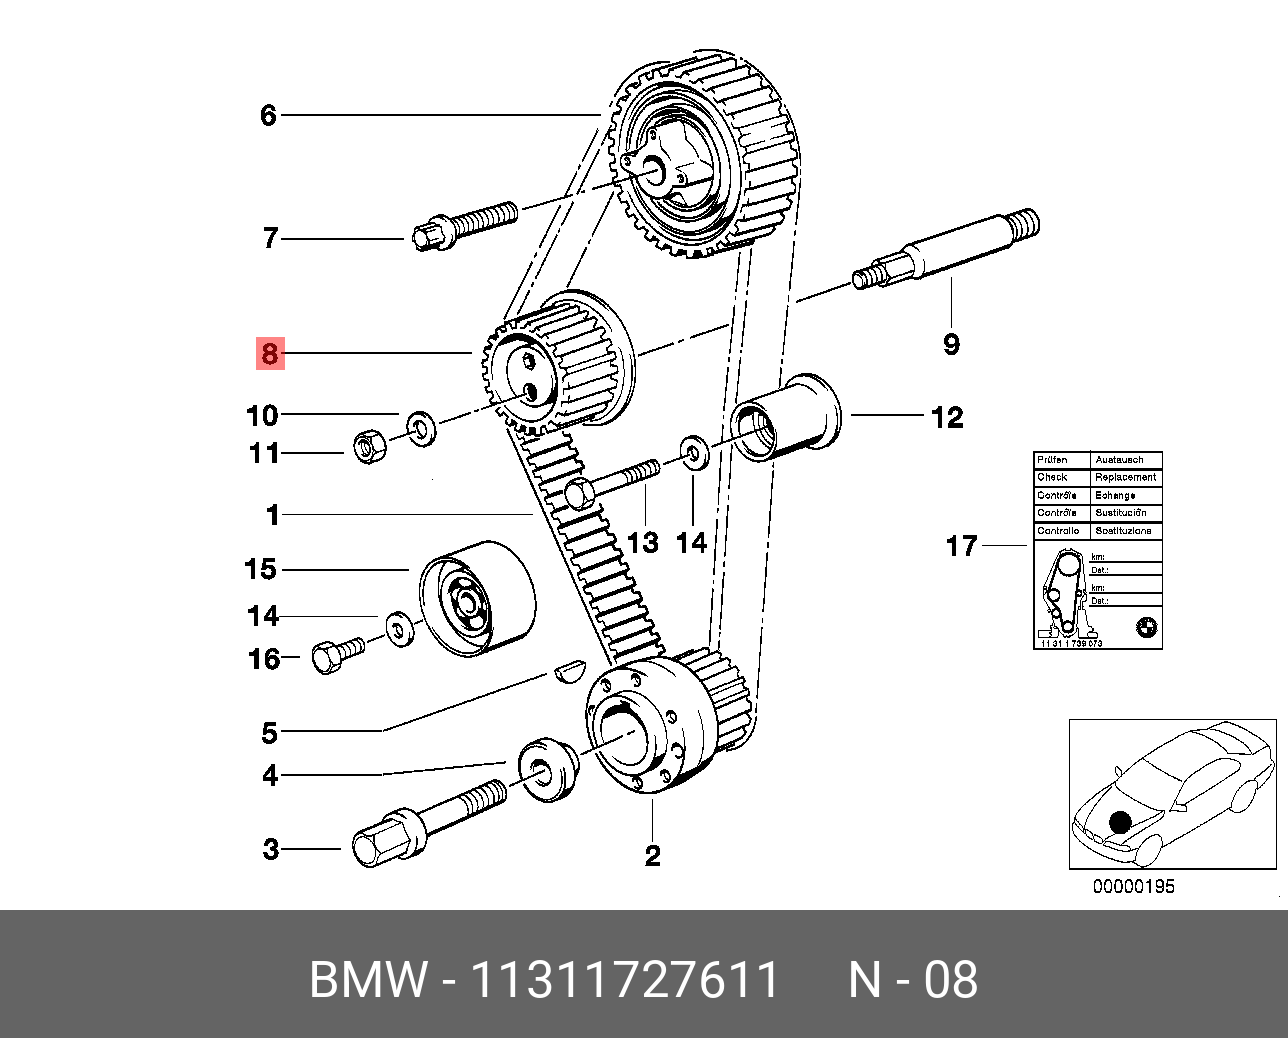 Ролик натяжной ГРМ - BMW 11 31 1 727 611